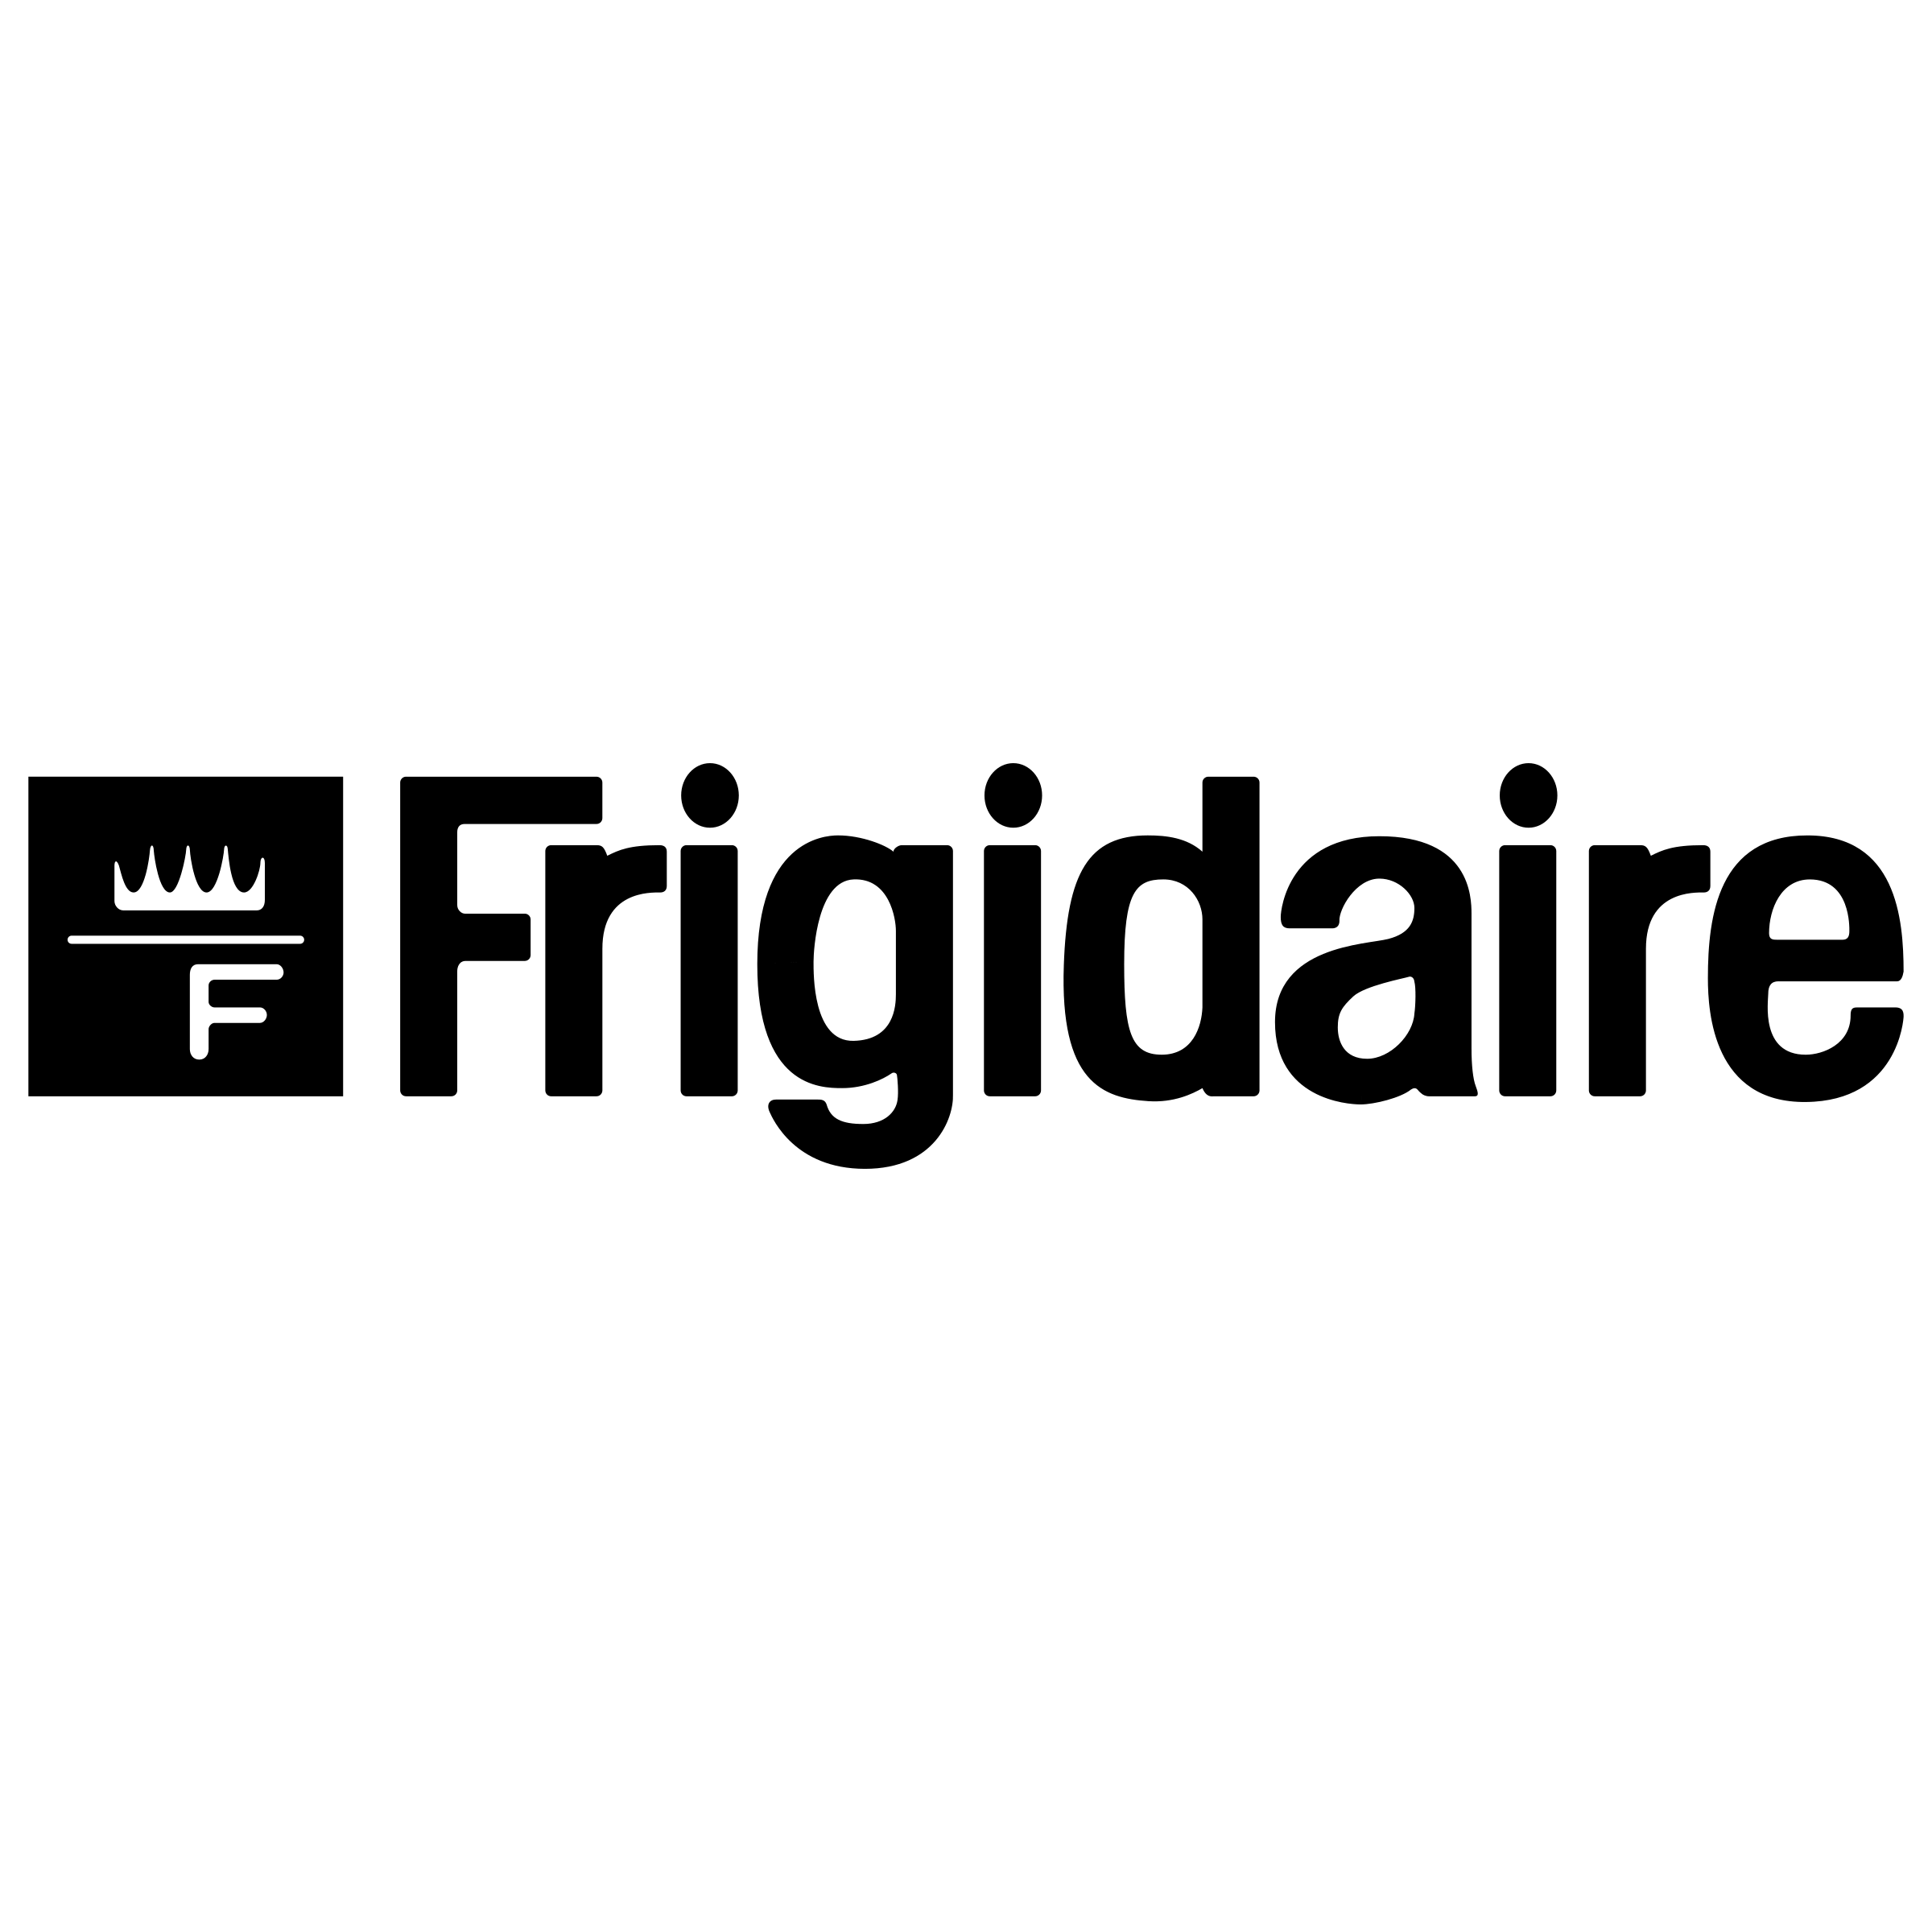 Fridgidaire Logo - Frigidaire Logo PNG Transparent & SVG Vector